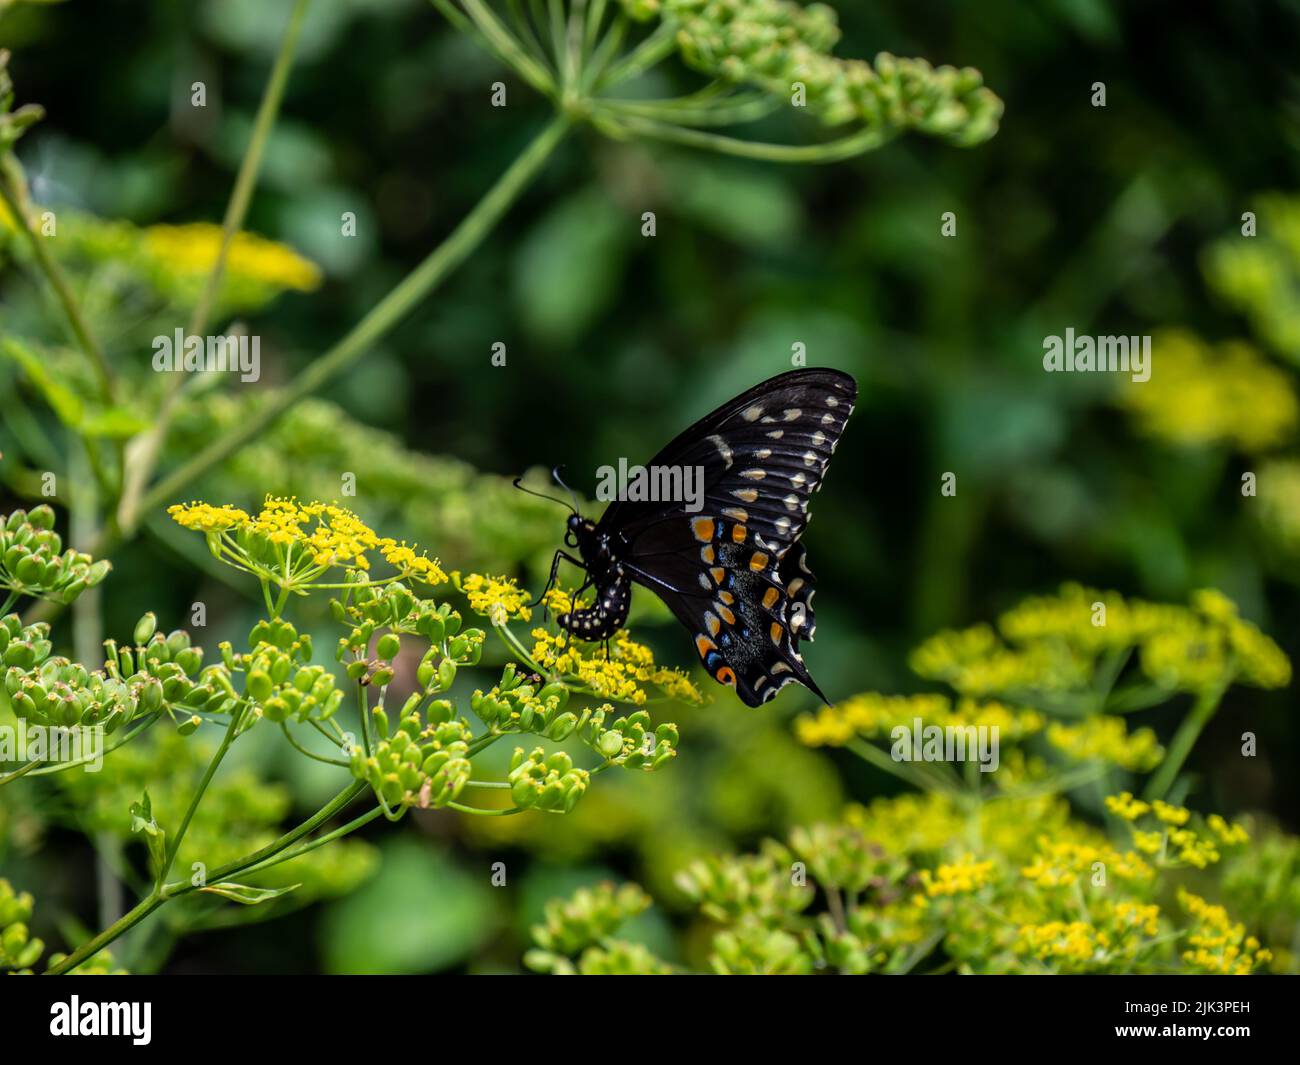 Gros plan d'un papillon à queue d'allowtail noir collectant le nectar de la fleur jaune sur une plante sauvage de panais qui pousse dans un champ. Banque D'Images